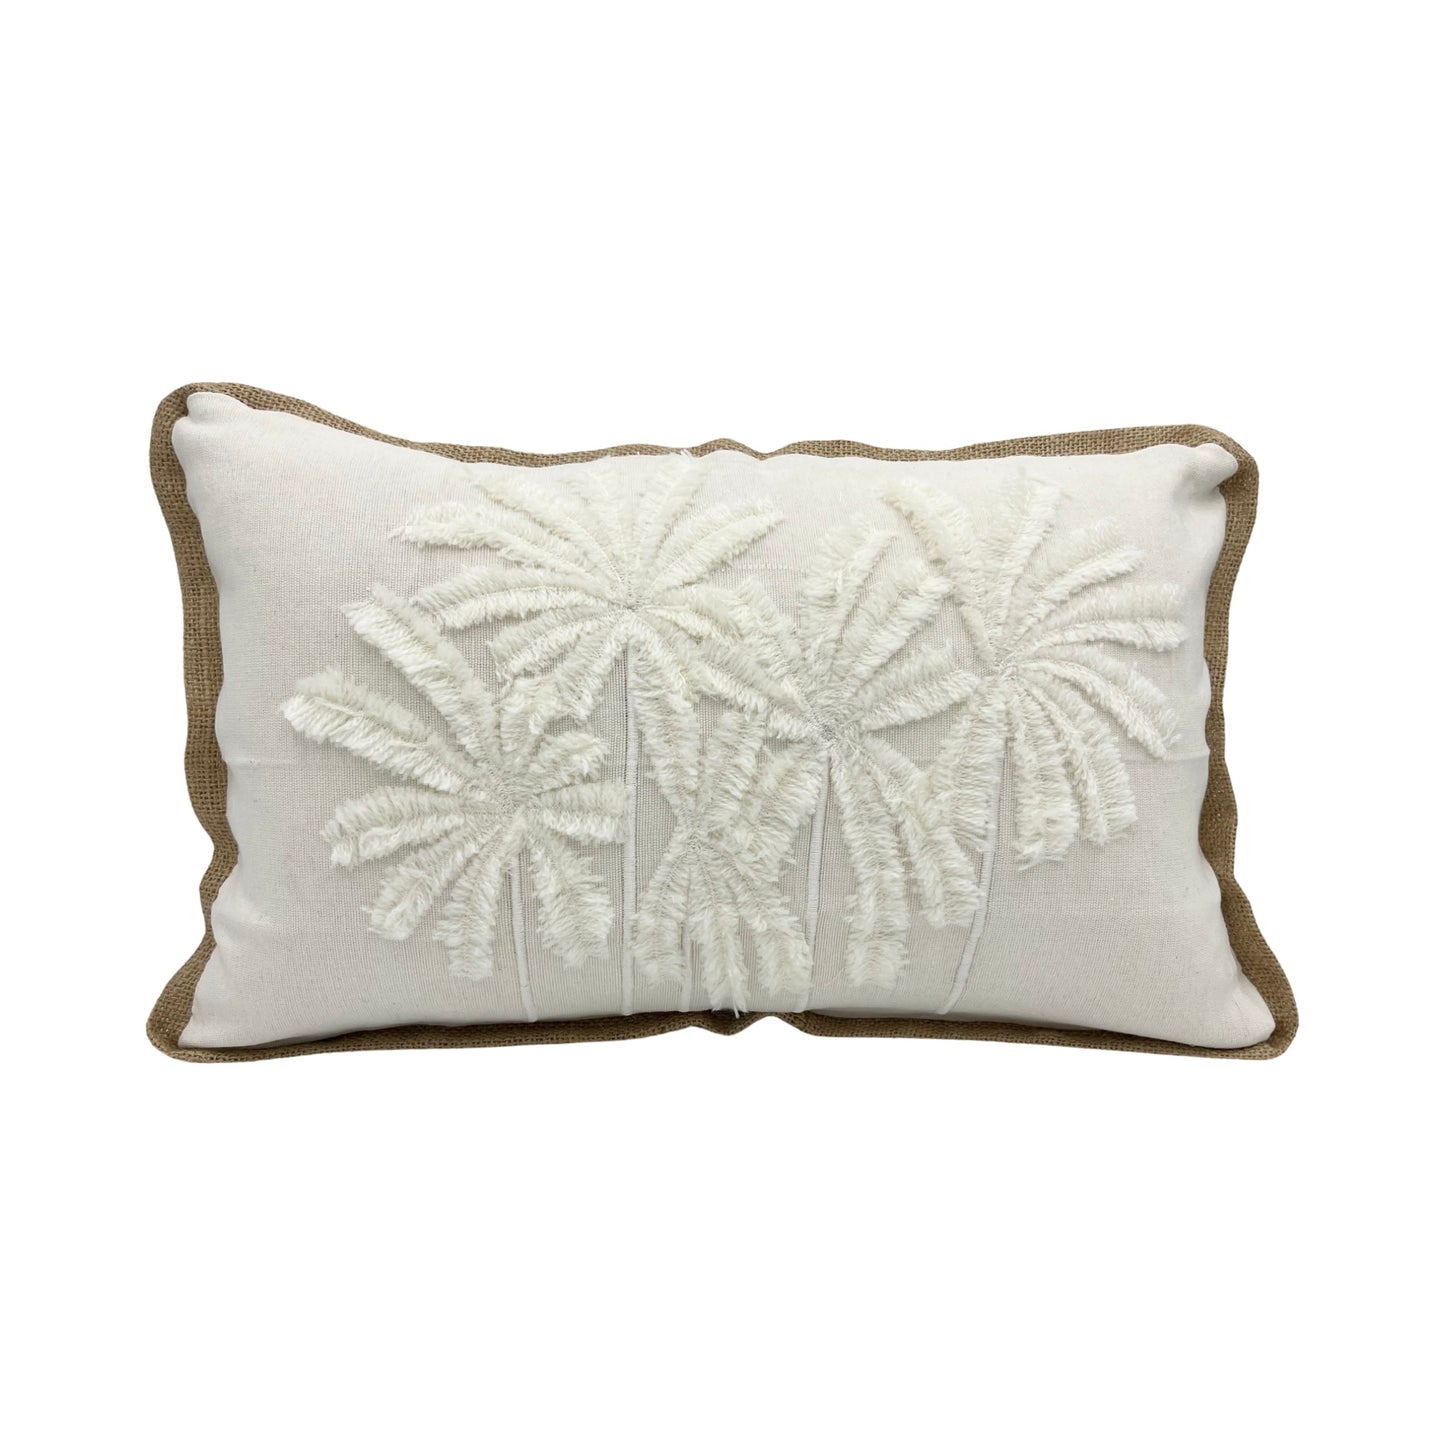 Holly Palm Cushion Cover / 50cm x 30cm - Cream